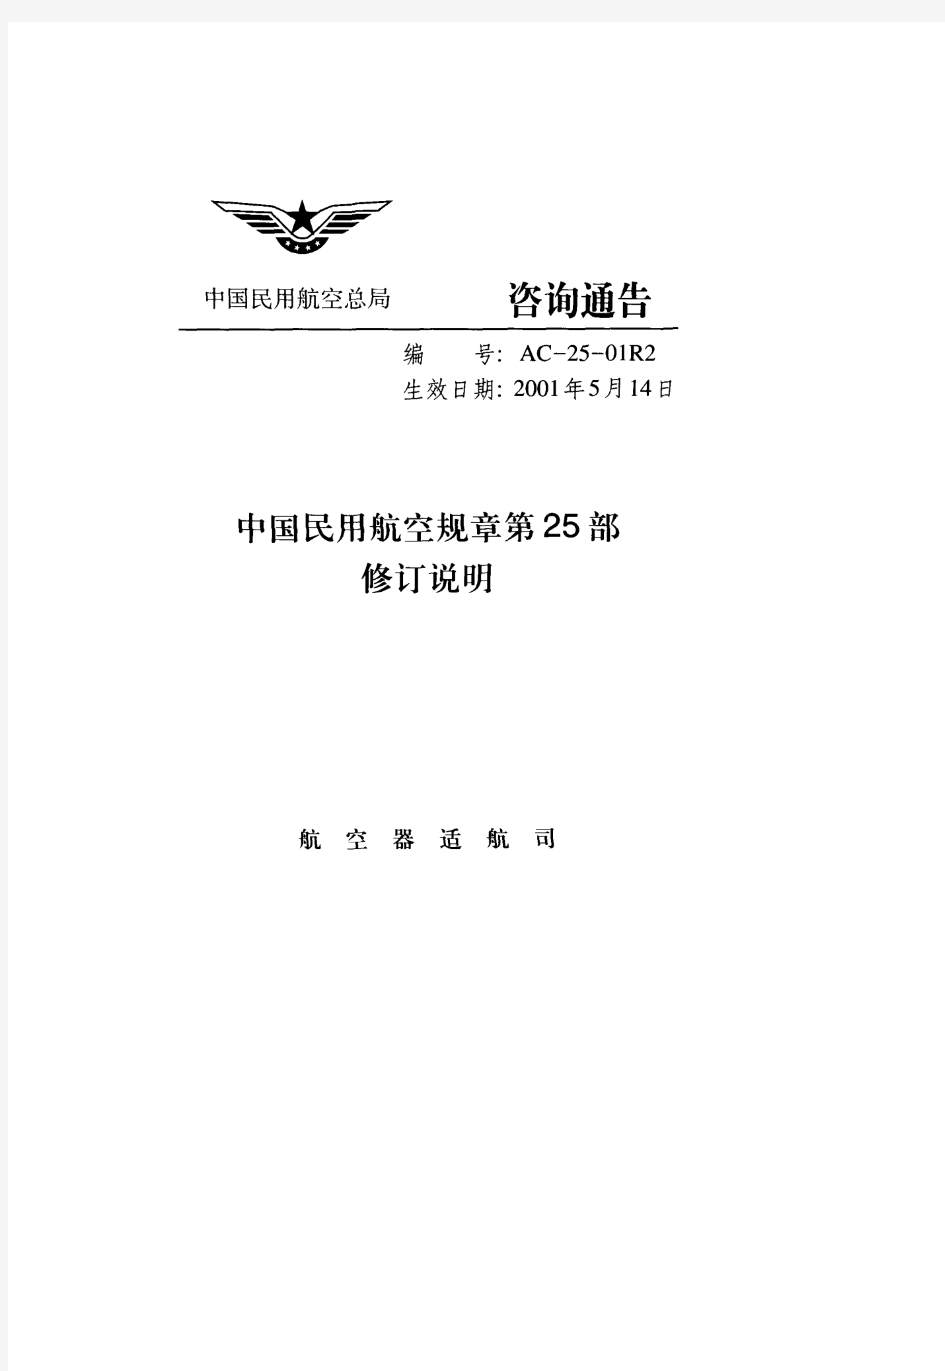 AC-25-01R2中国民用航空规章第25部修订说明